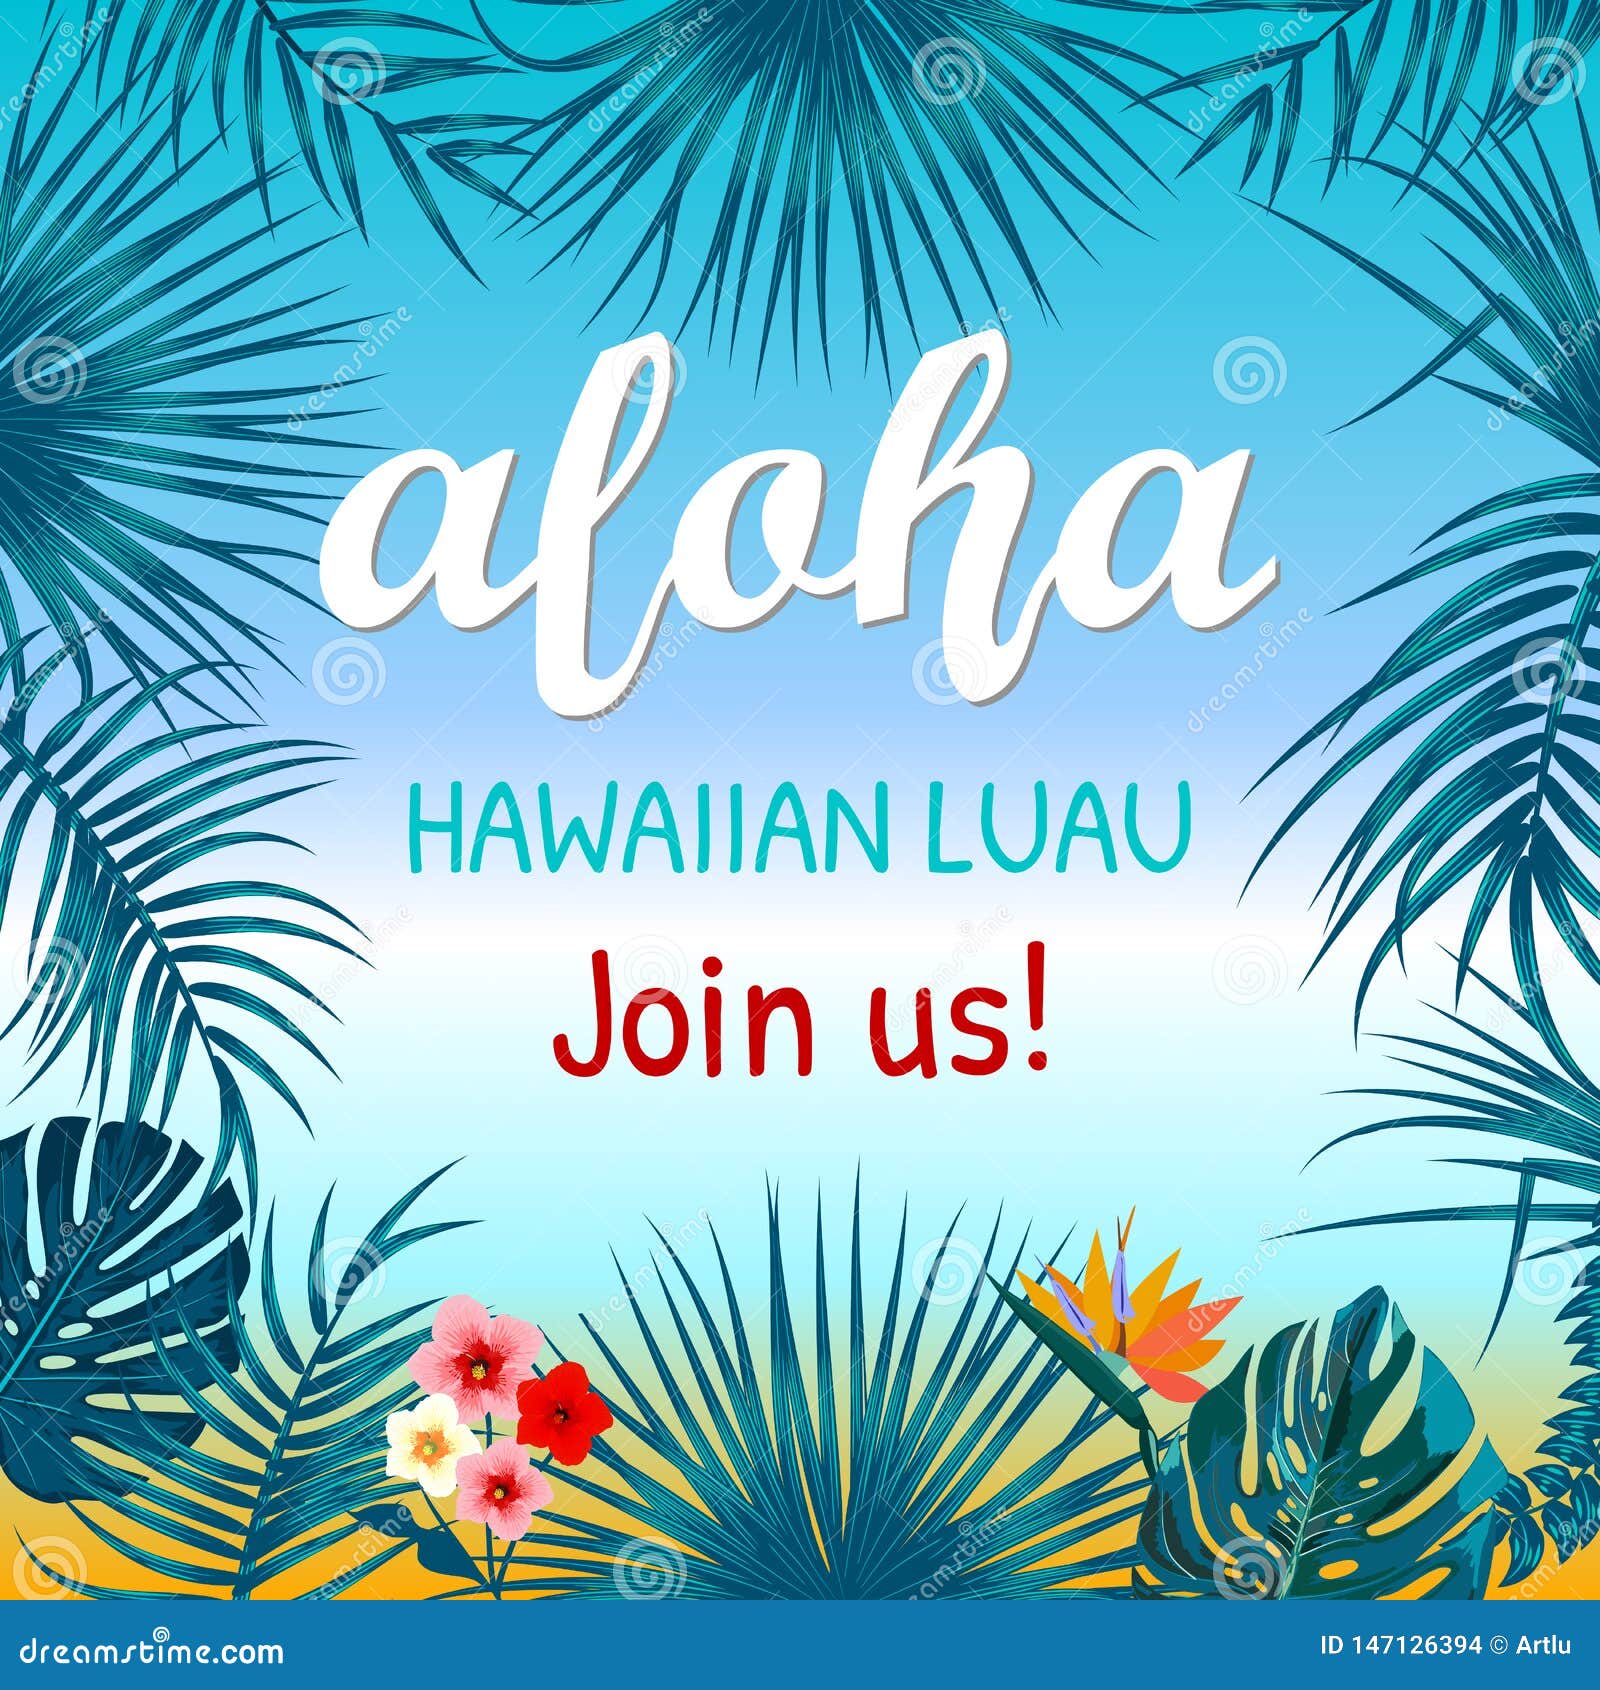 Vector Aloha Hawaii: Muốn tìm kiếm hình ảnh Aloha Hawaii sáng tạo và độc đáo? Khám phá ngay bộ sưu tập vector Aloha Hawaii đầy màu sắc trên Freepik. Với những vector chất lượng cao và đầy tinh tế, bạn sẽ có được những bức tranh tuyệt đẹp cho các dự án thiết kế của mình.